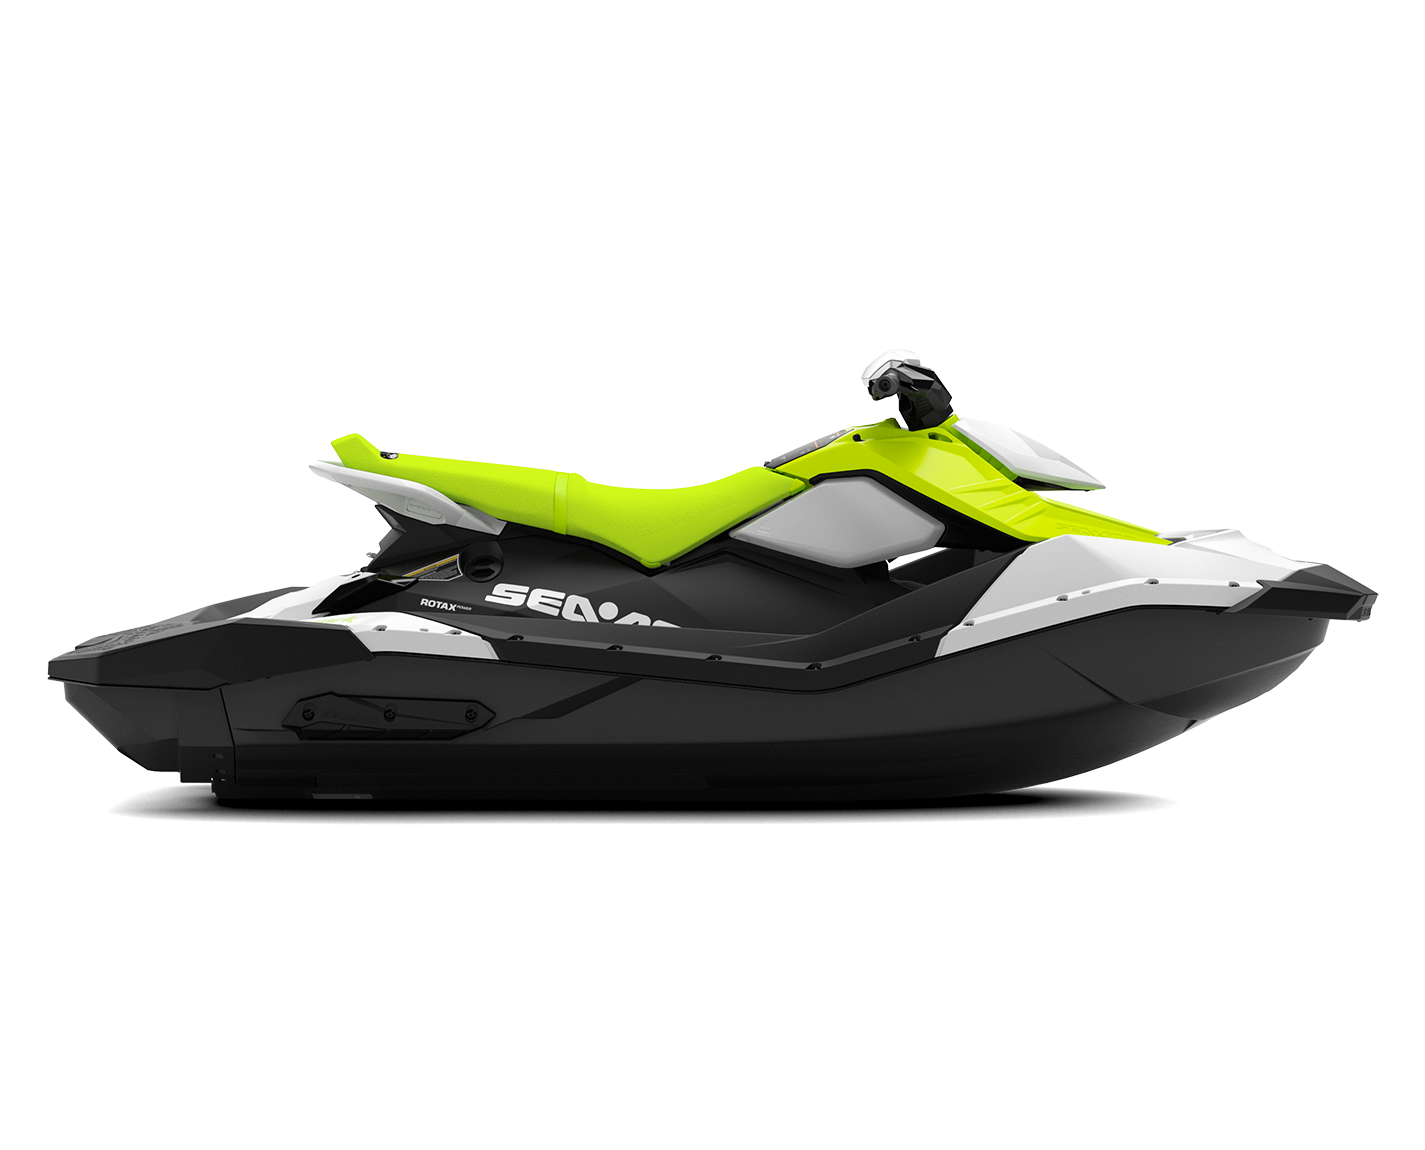 2022 SeaDoo Personal Watercraft Lineup WA Seadoo